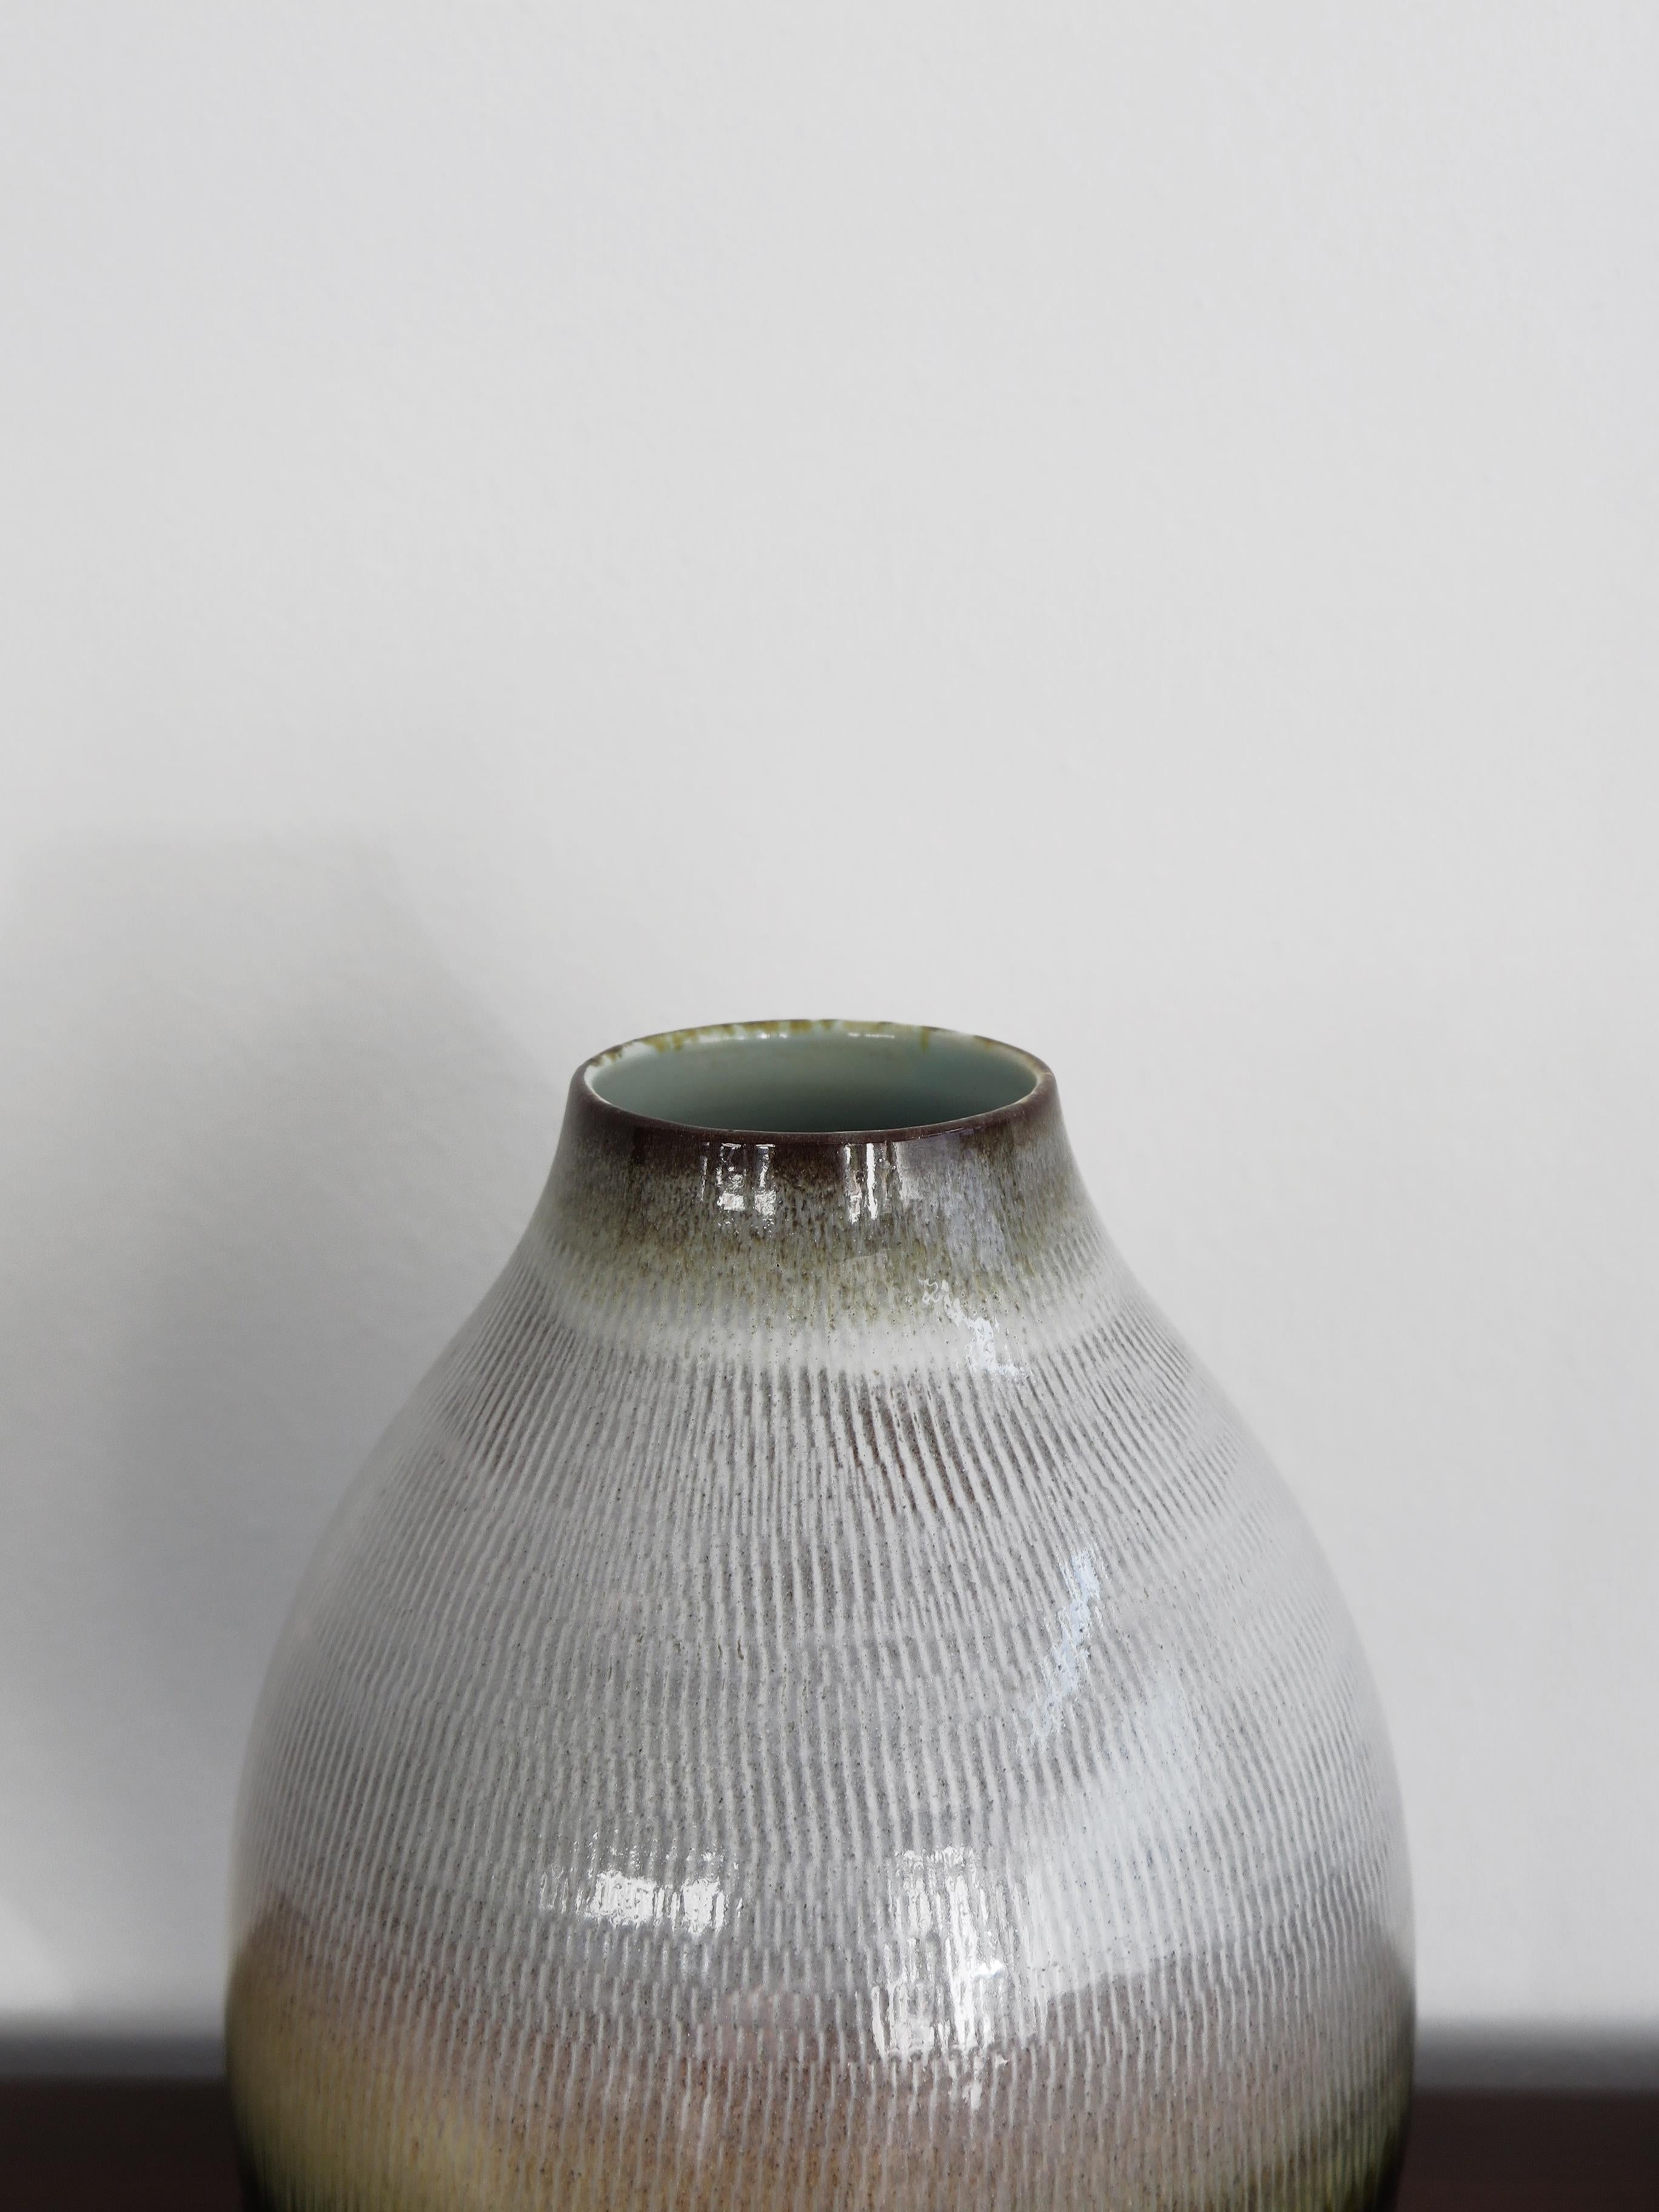 Vase italien contemporain en céramique conçu et produit par Amaaro, réalisé à la main et émaillé d'oxydes et de cristallins, l'œuvre devient un objet précieux et sculptural, signature gravée sous la base,
production Italie 2022